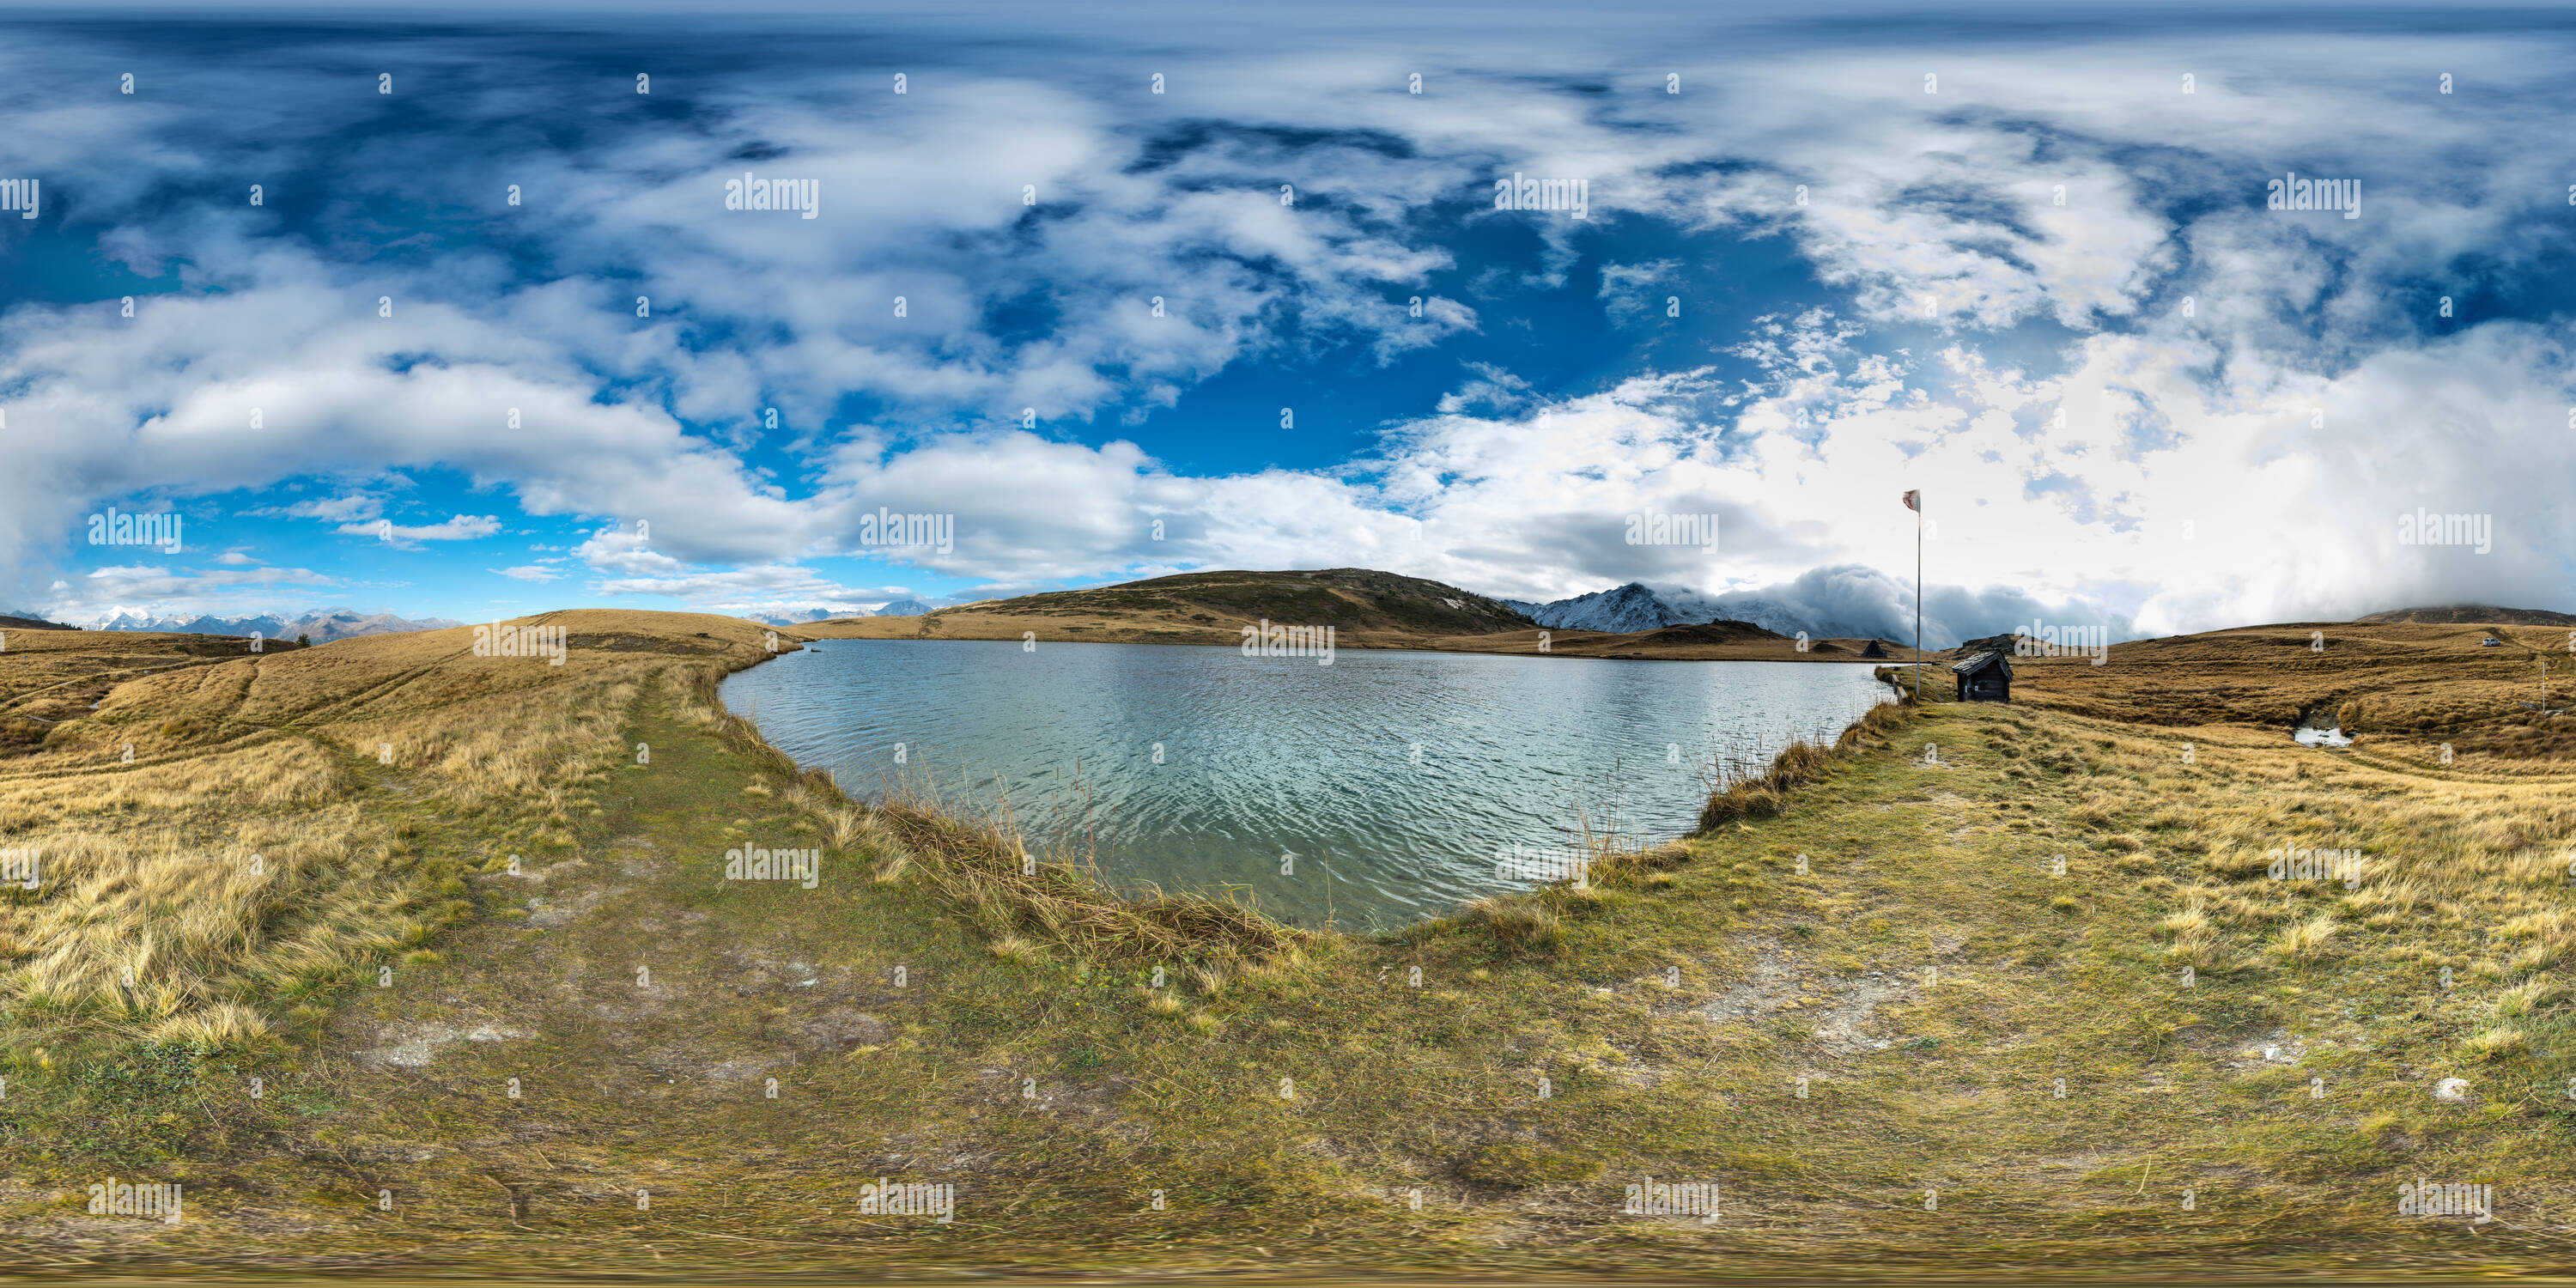 360 degree panoramic view of Suone Heido 1 Gibidum Pass Switzerland